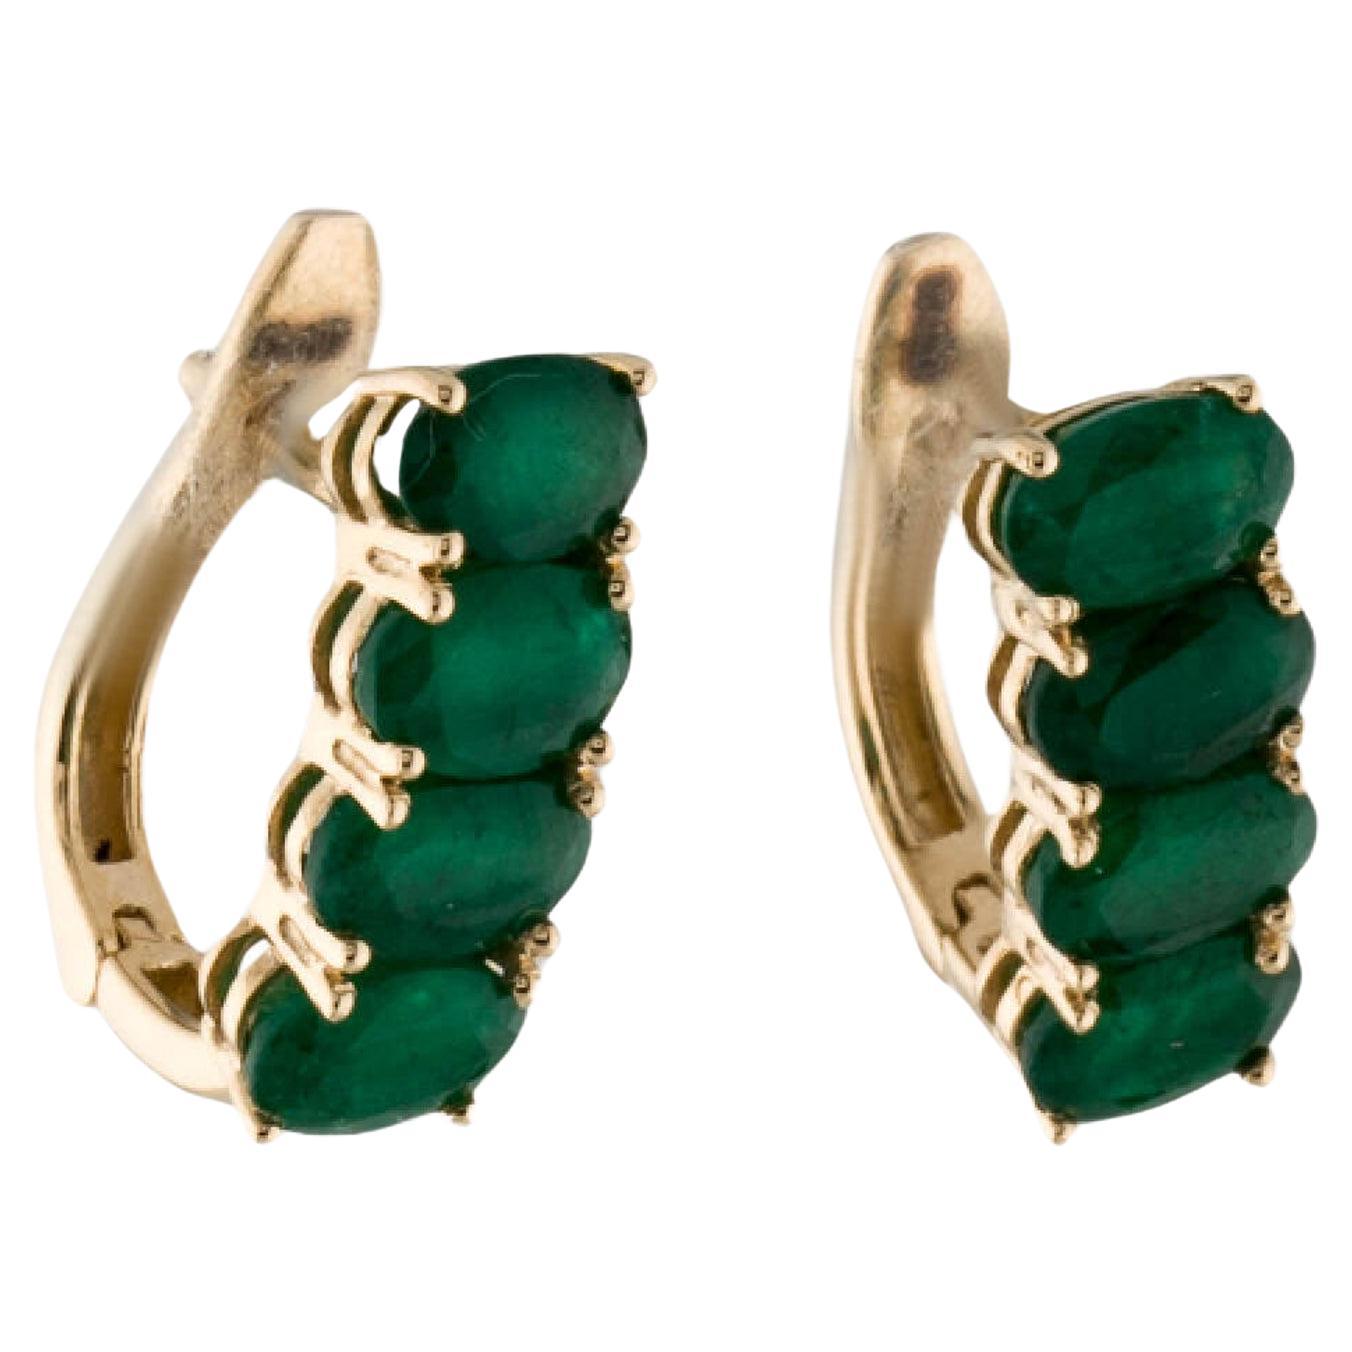 14K Emerald Earclip Earrings - 2.35ctw, Elegant Gemstone Jewelry, Classic Style